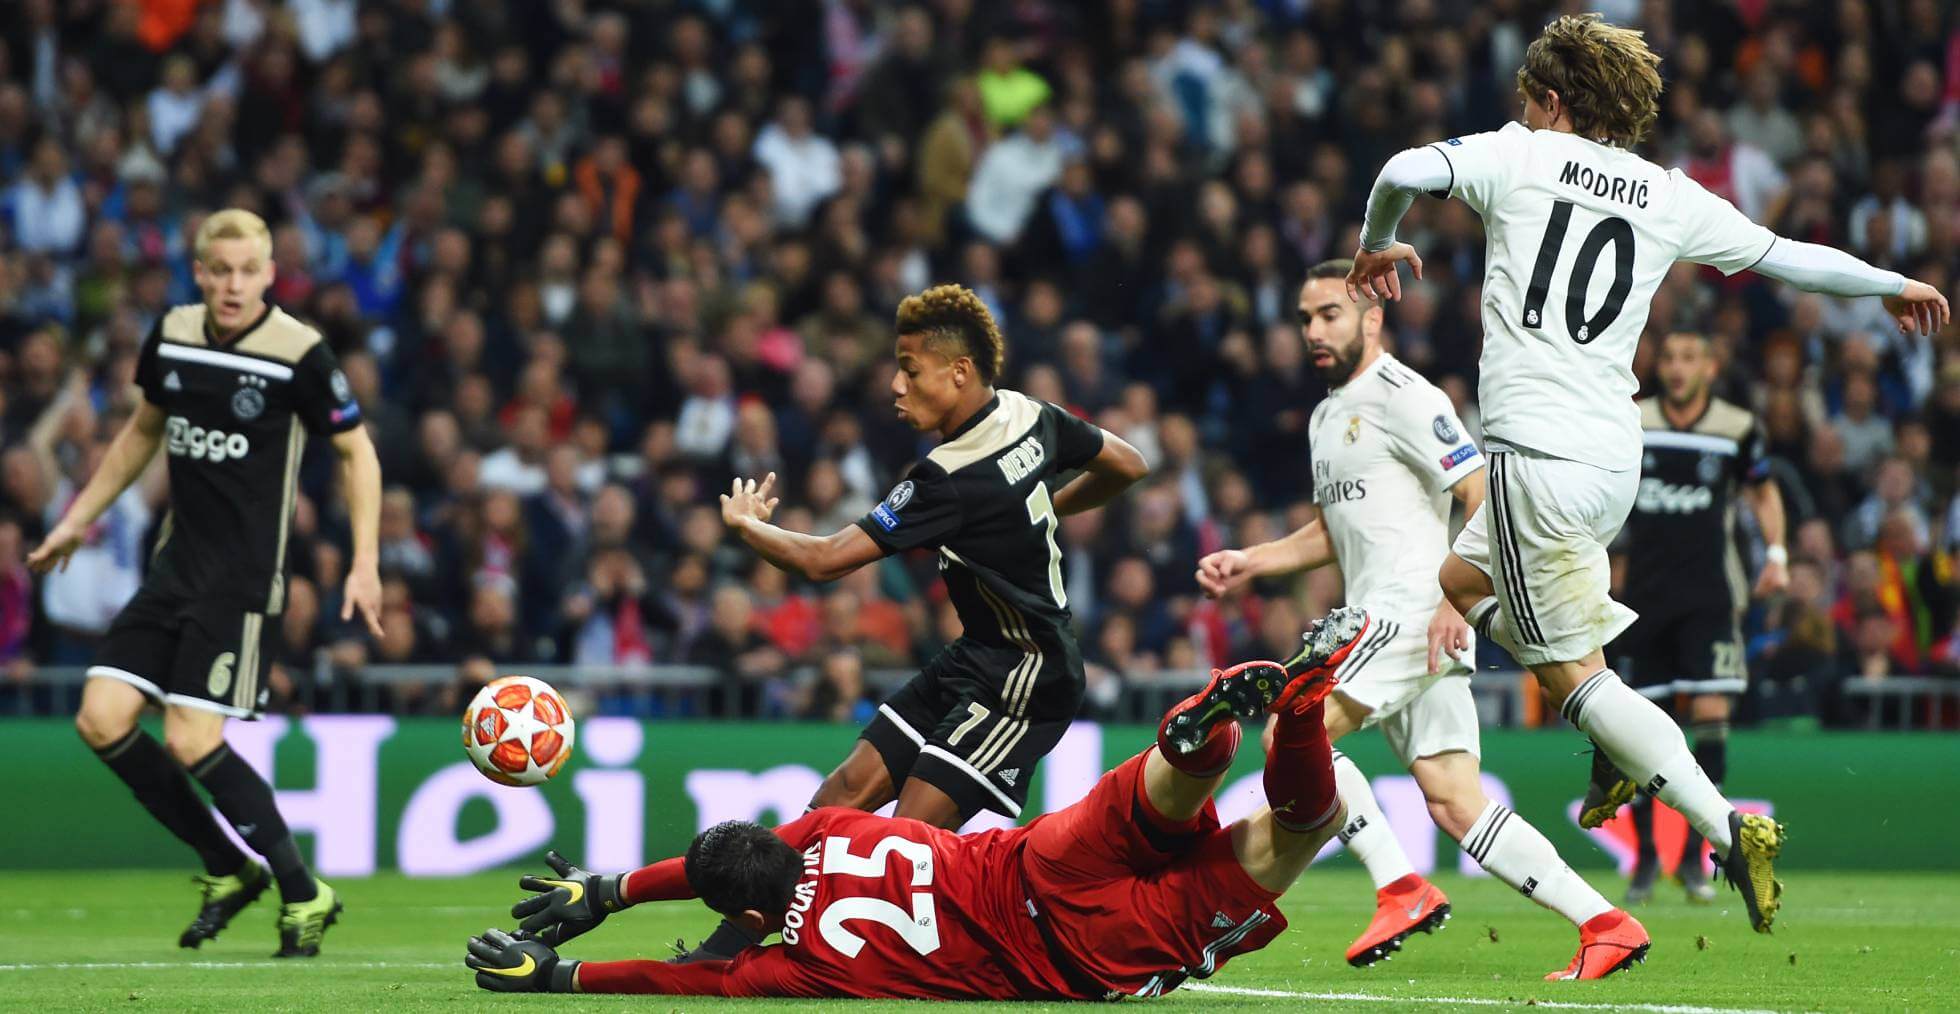 Ajax vs Madrid